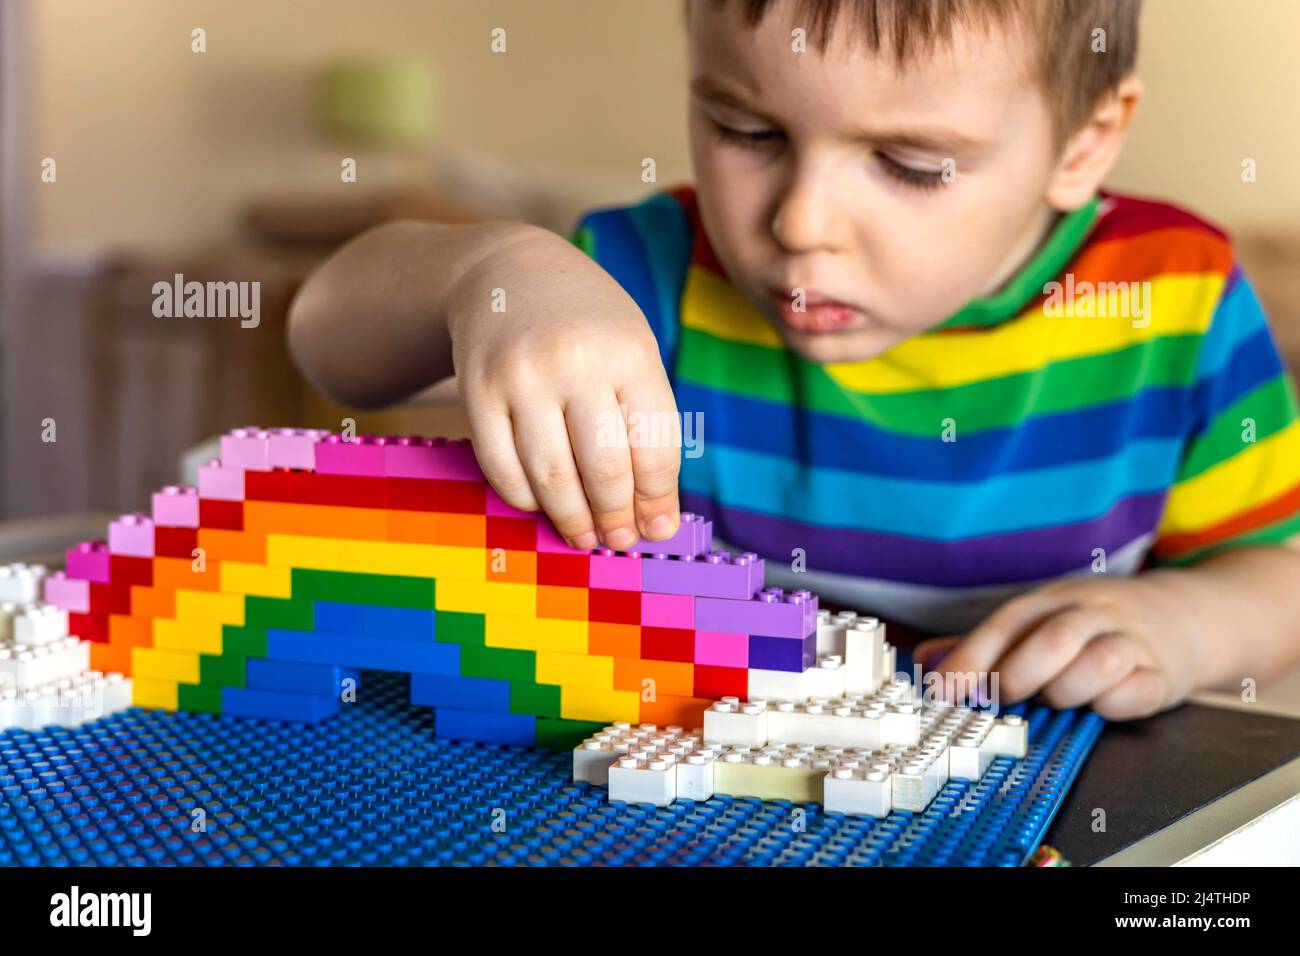 How to Build a LEGO Rainbow